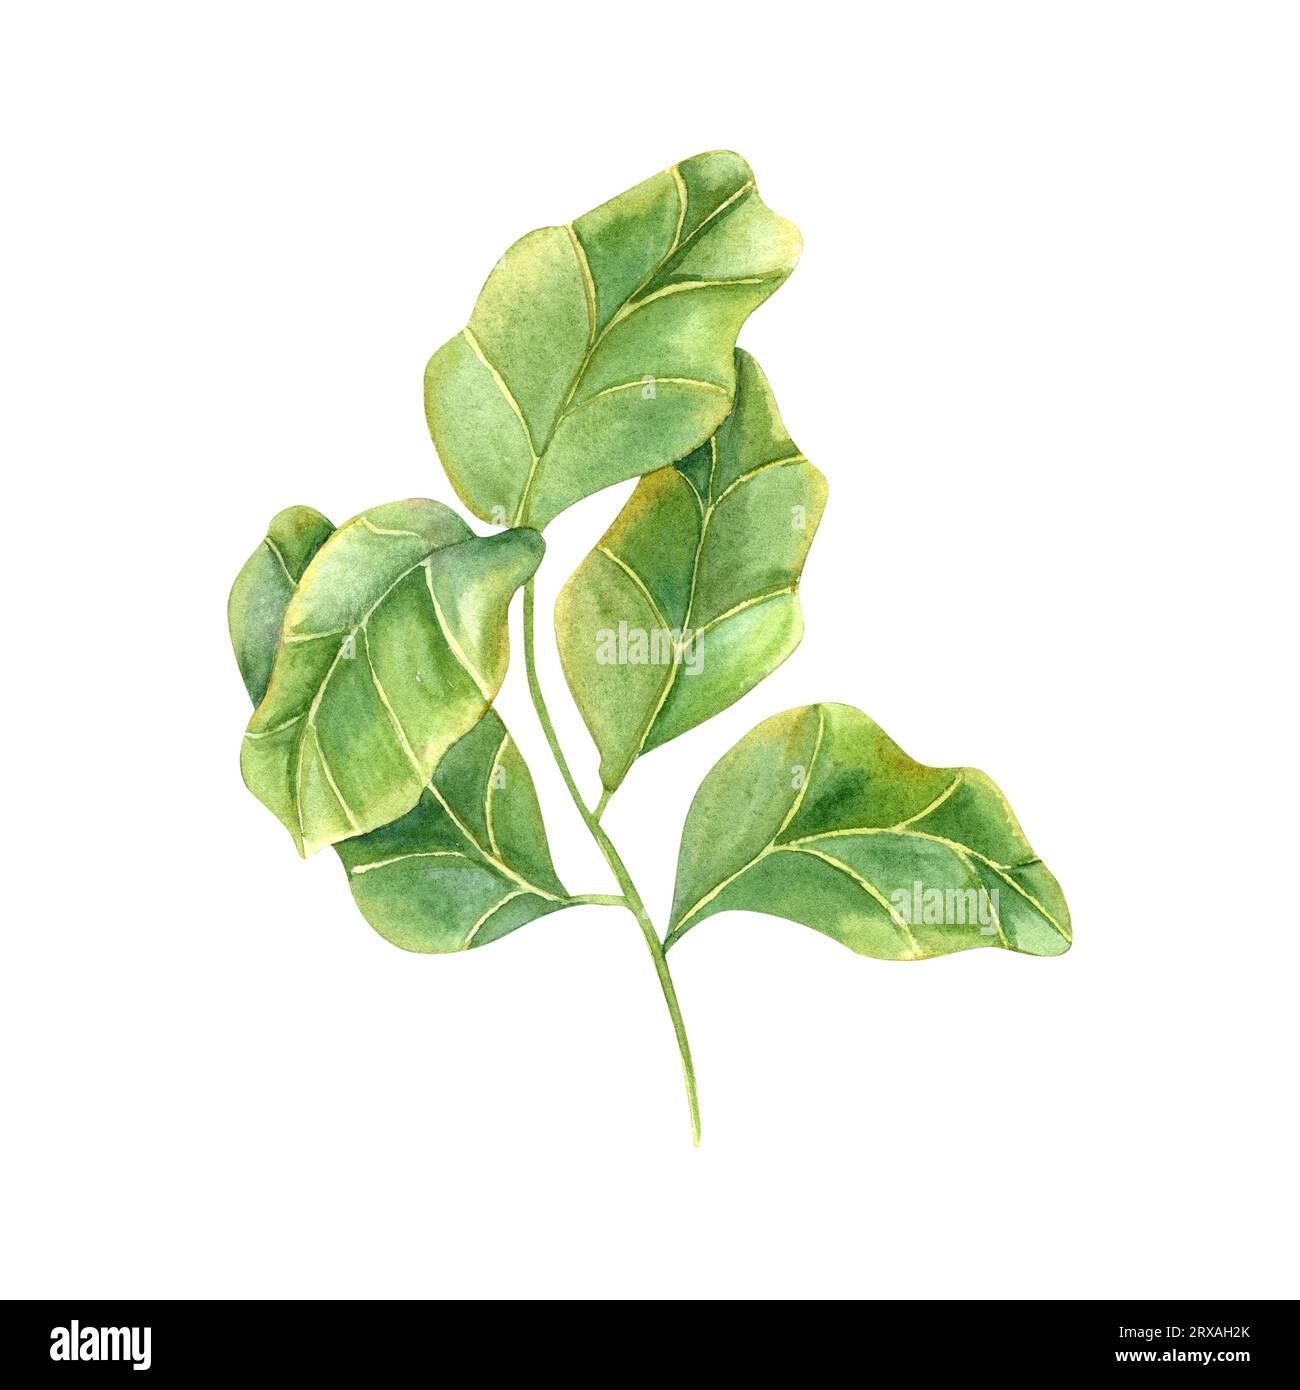 Stilvolle Pflanze mit riesigen grünen Blättern. Zimmerpflanzen mit Fidelblatt Feige. Ficus-Lyratzweig für den Indoor-Gartenbau. Für Inneneinrichtung, Designelement Stockfoto